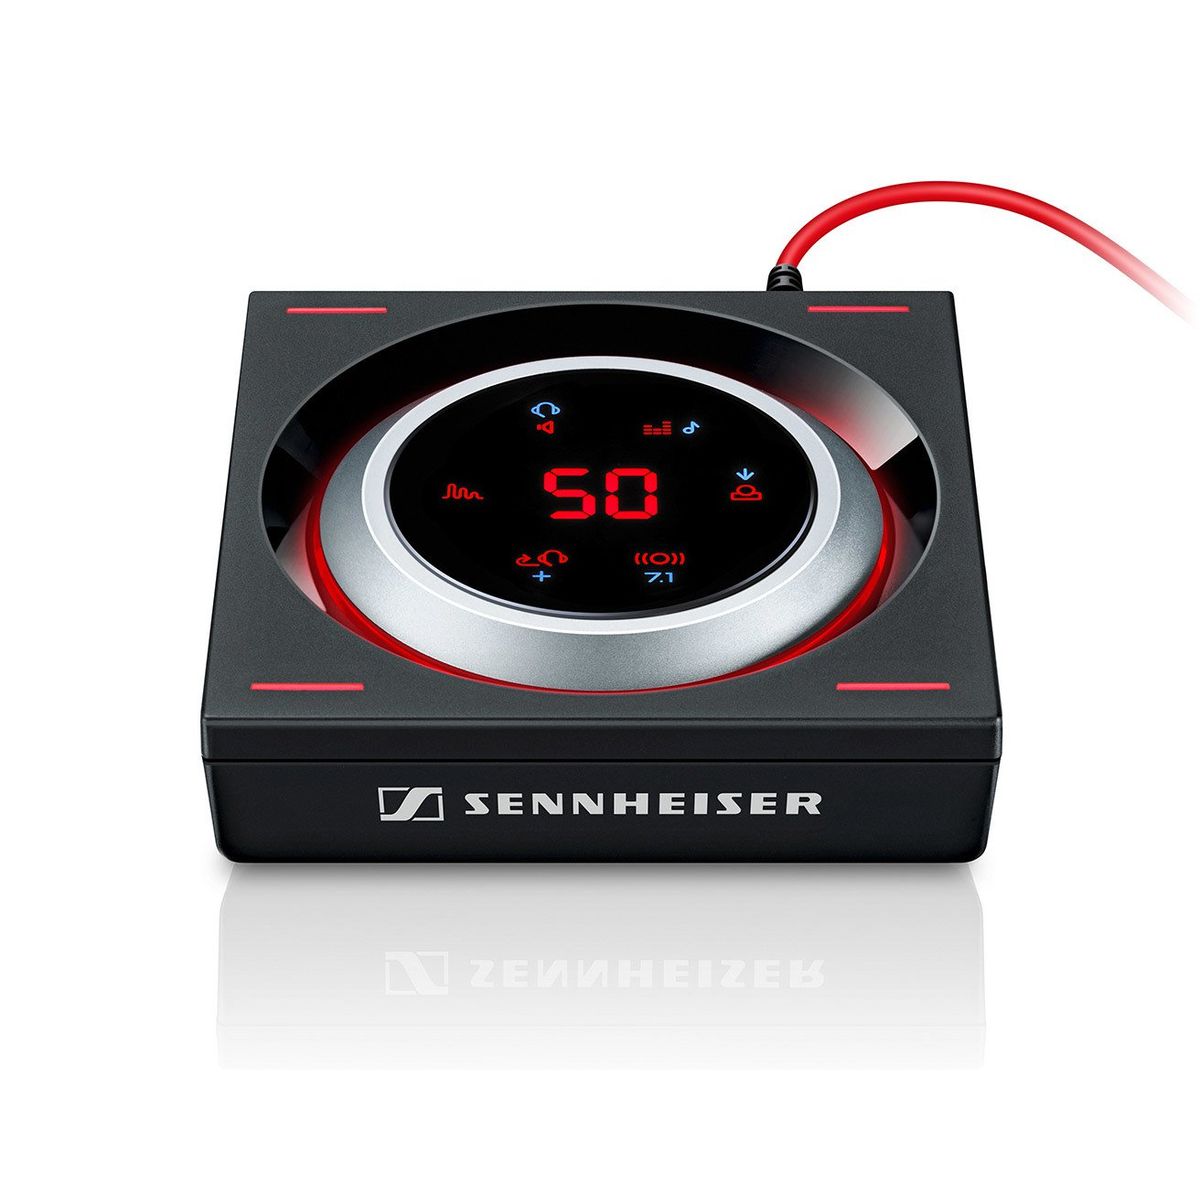 Die besten USB-Soundkarten: Sennheiser GSX 1000